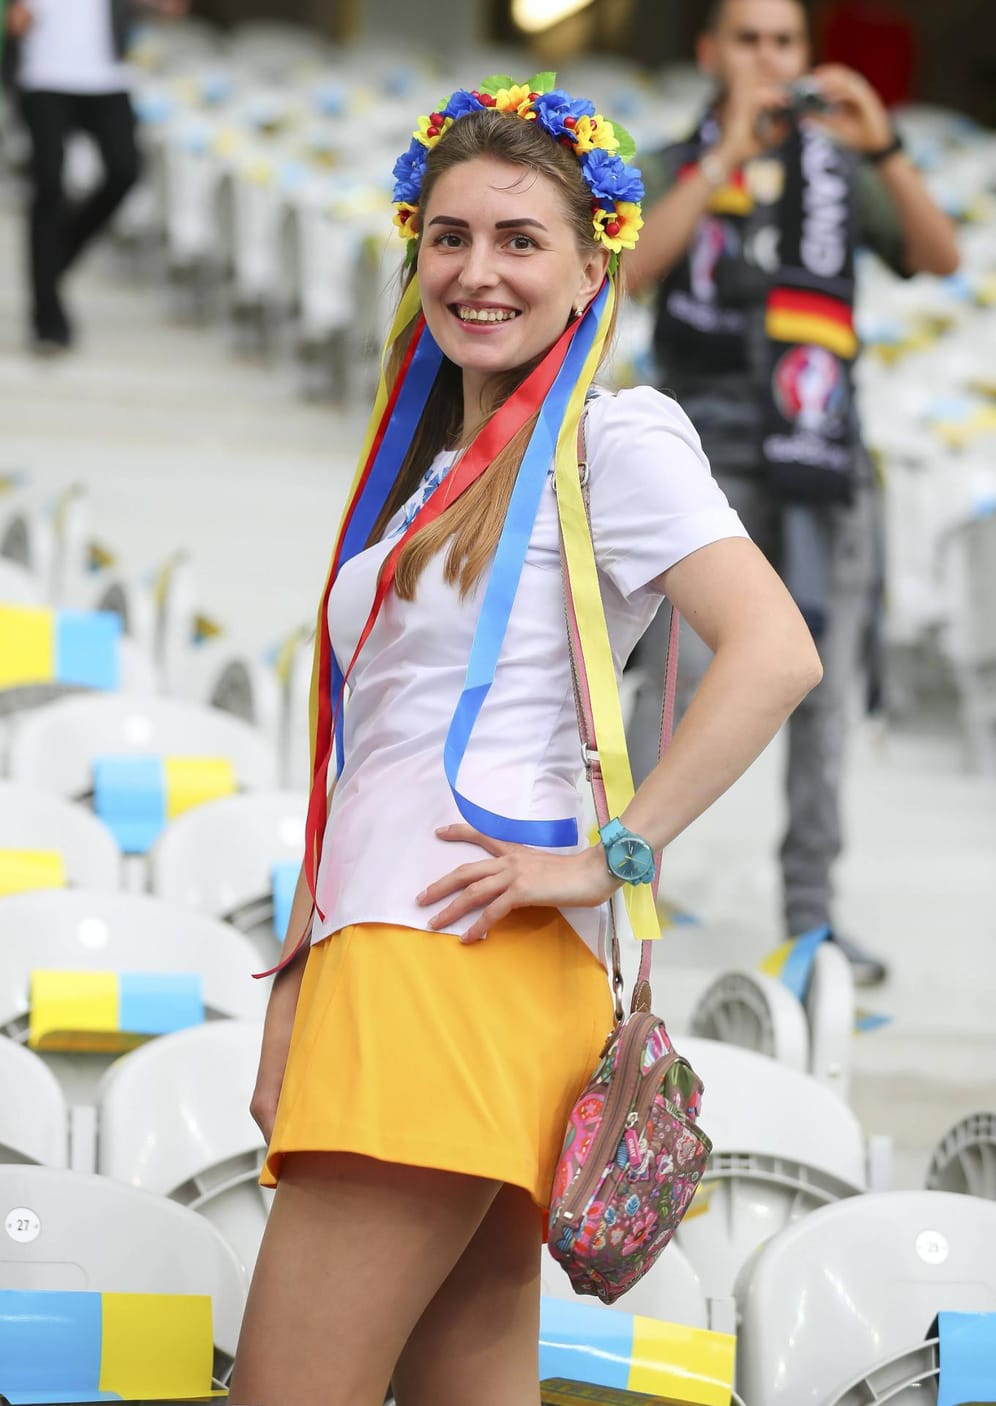 Blumenkränze kommen nie aus der Mode und sind in den Nationalfarben ein Muss für viele weibliche Fußballfans, wie diese Ukrainerin beweist.